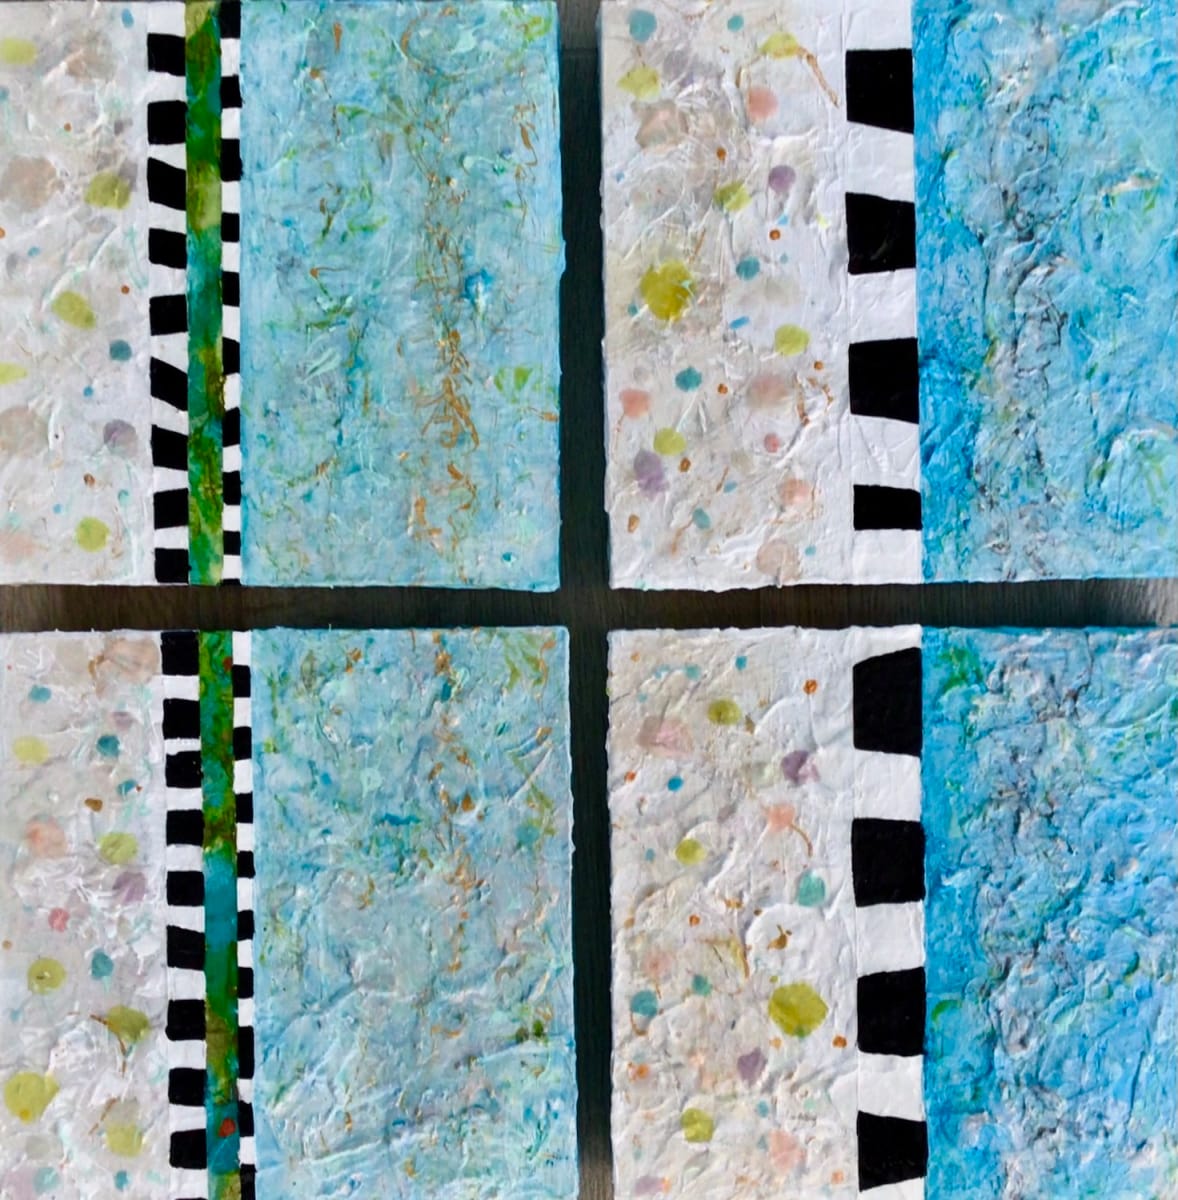 Stripes & Confetti - Quadriptych by Carolyn Kramer  Image: Stripes & Confetti - Quadriptych